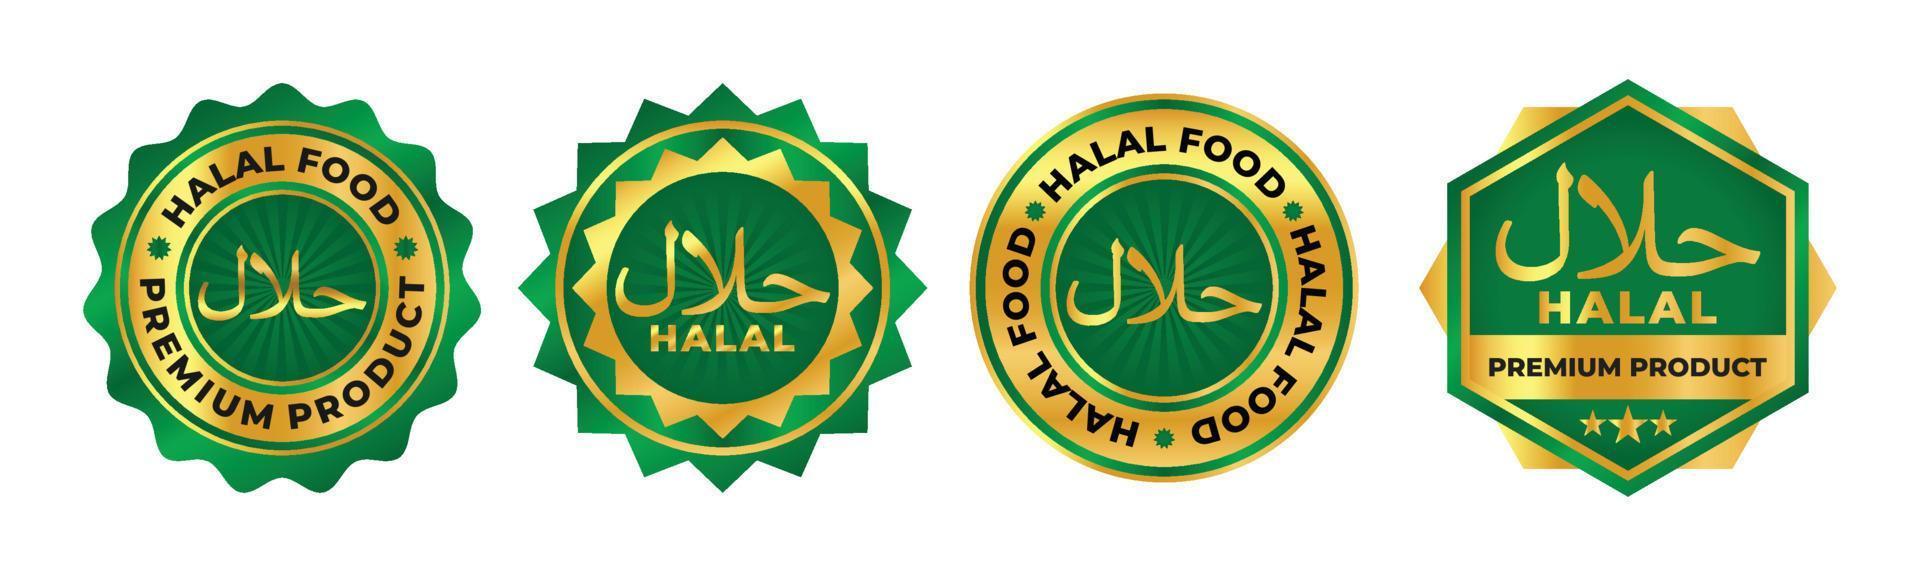 halal cibo e Prodotto distintivo logo vettore con verde e oro colore